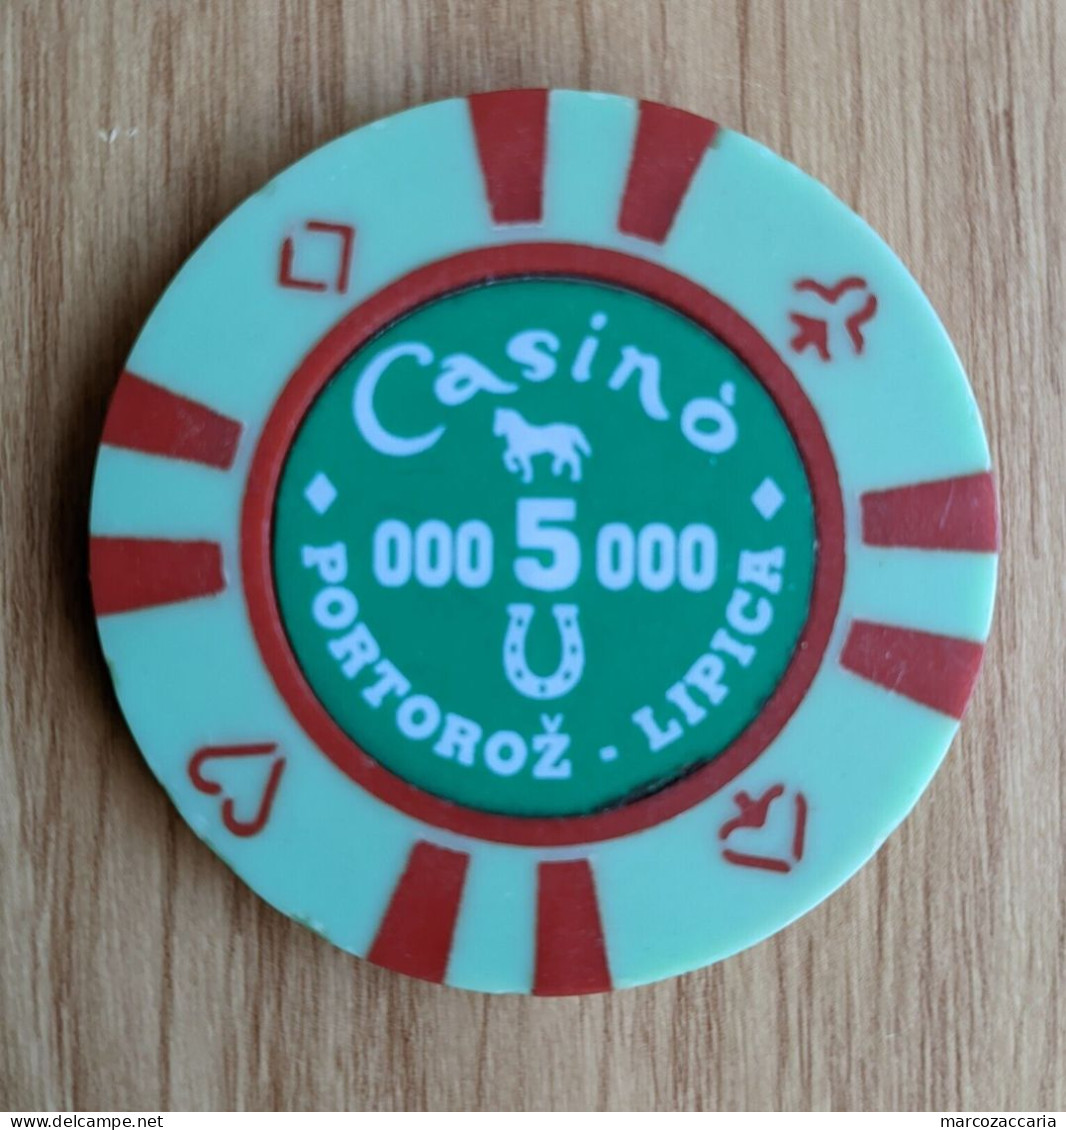 GETTONE, TOKEN, FICHE CASINO' PORTOROŽ/PORTOROSE-LIPICA 5.000 LIRE - Casino